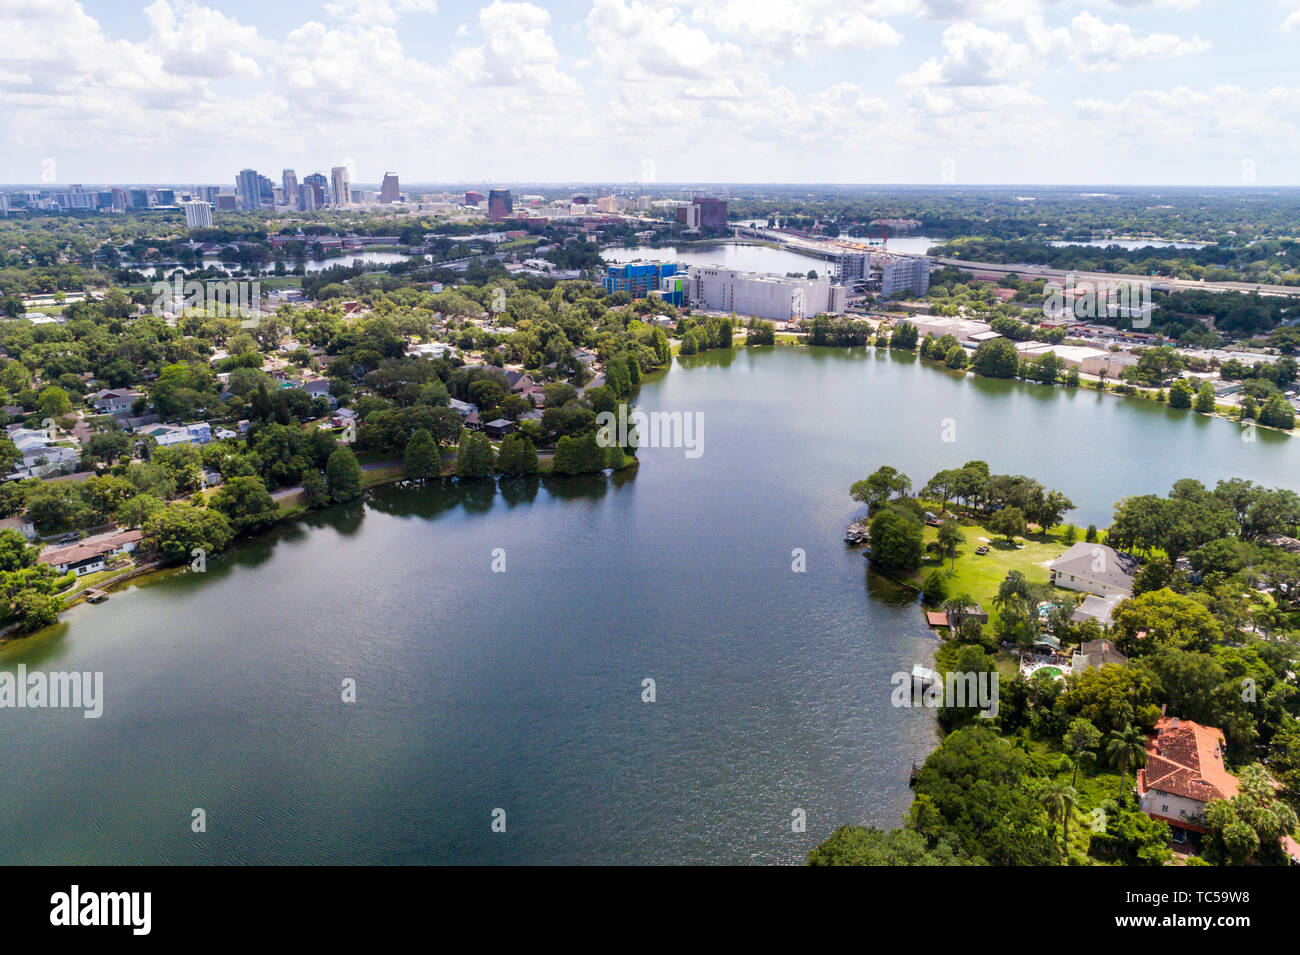 Orlando Florida, Lake Formosa, centre-ville, vue aérienne aérienne d'oiseau au-dessus, les visiteurs voyage visite touristique site touristique Landm Banque D'Images